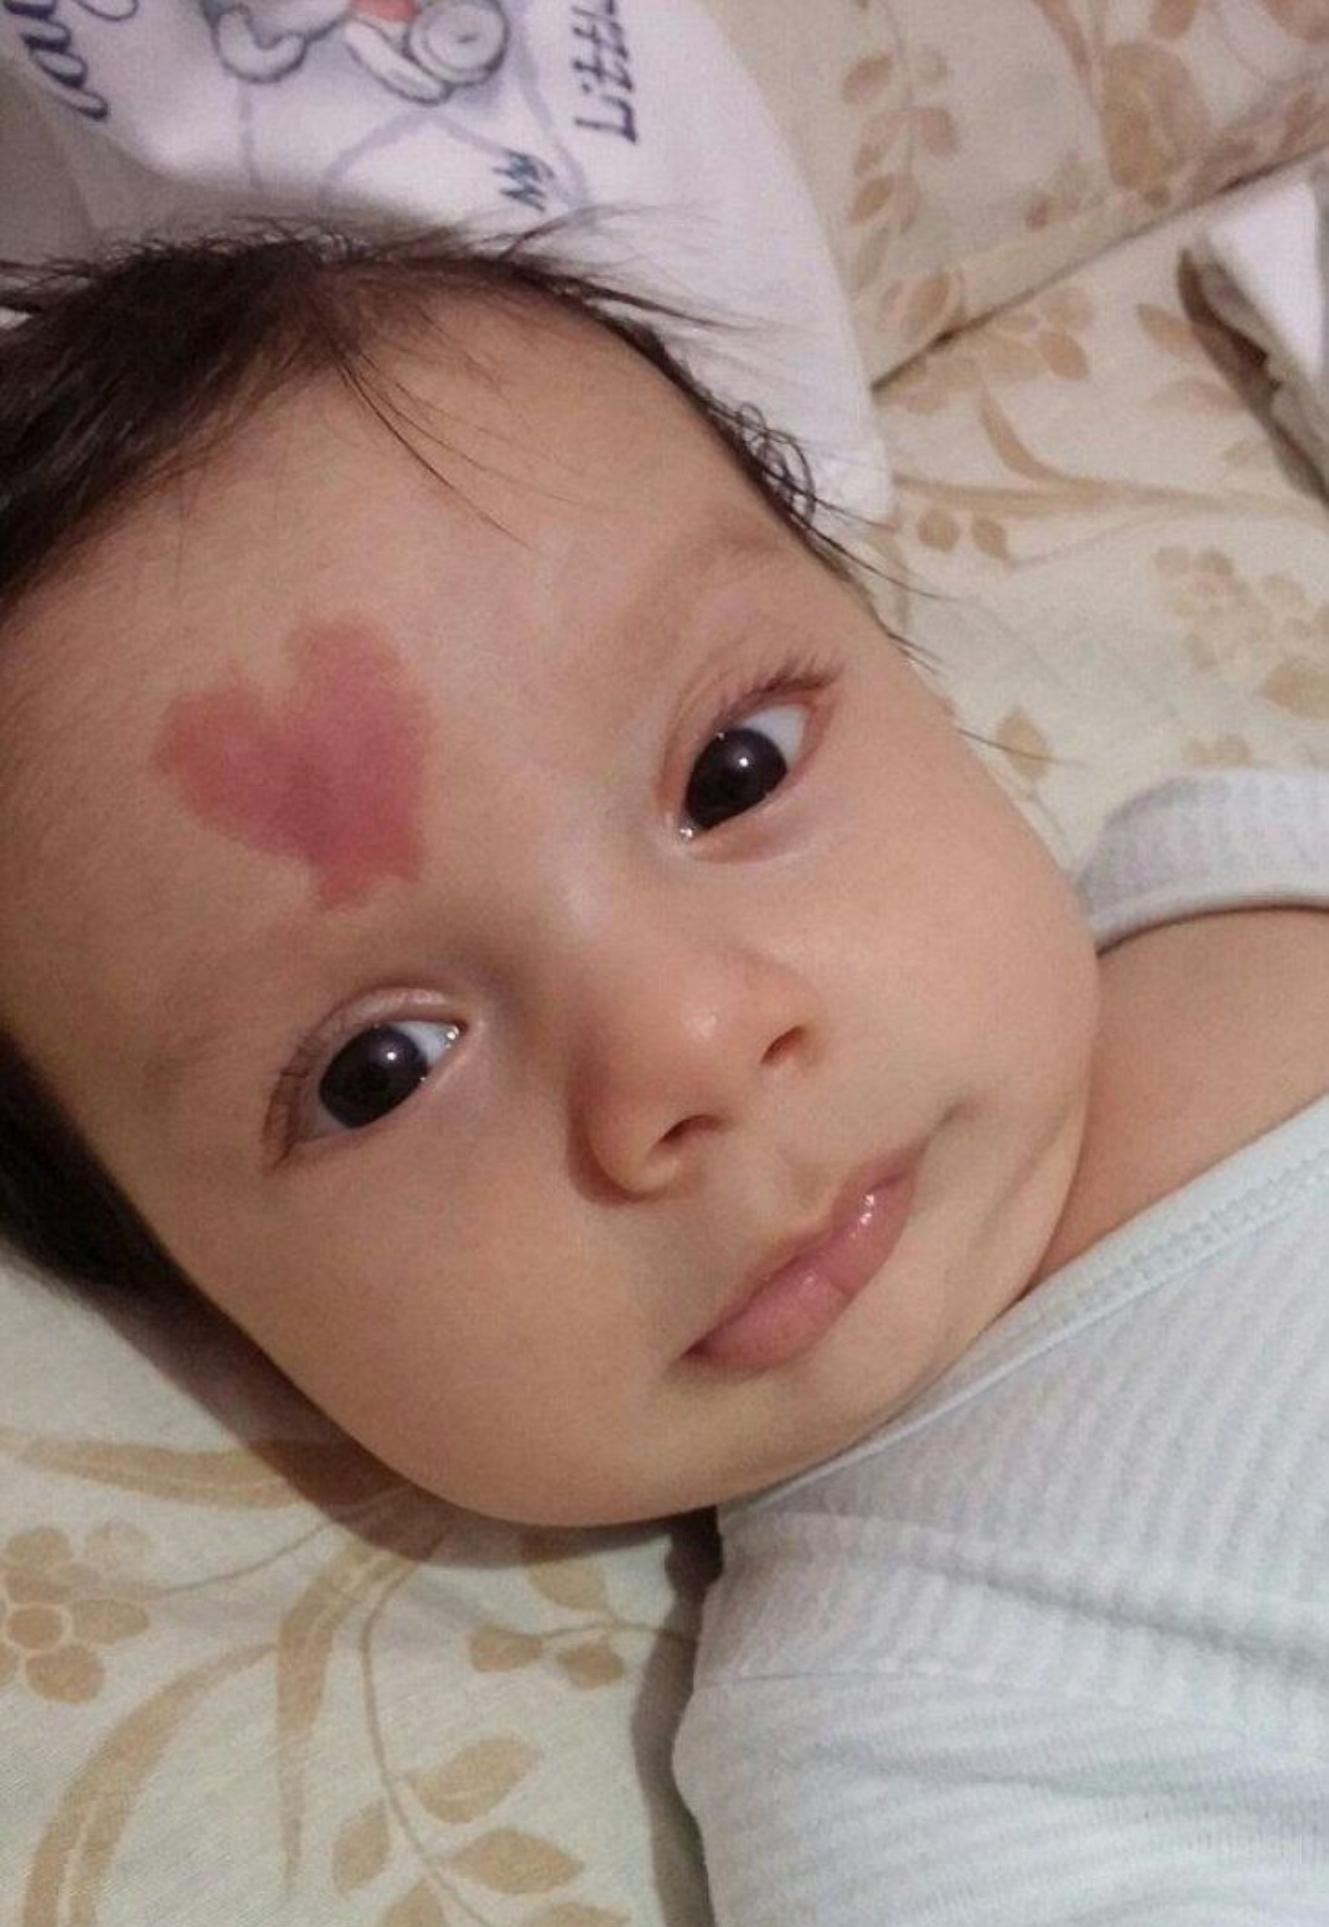 Το μωράκι της αγάπης: Γεννήθηκε με ένα σημάδι σε σχήμα καρδιάς και κάνει τους πάντες να λιώνουν μόλις το βλέπουν